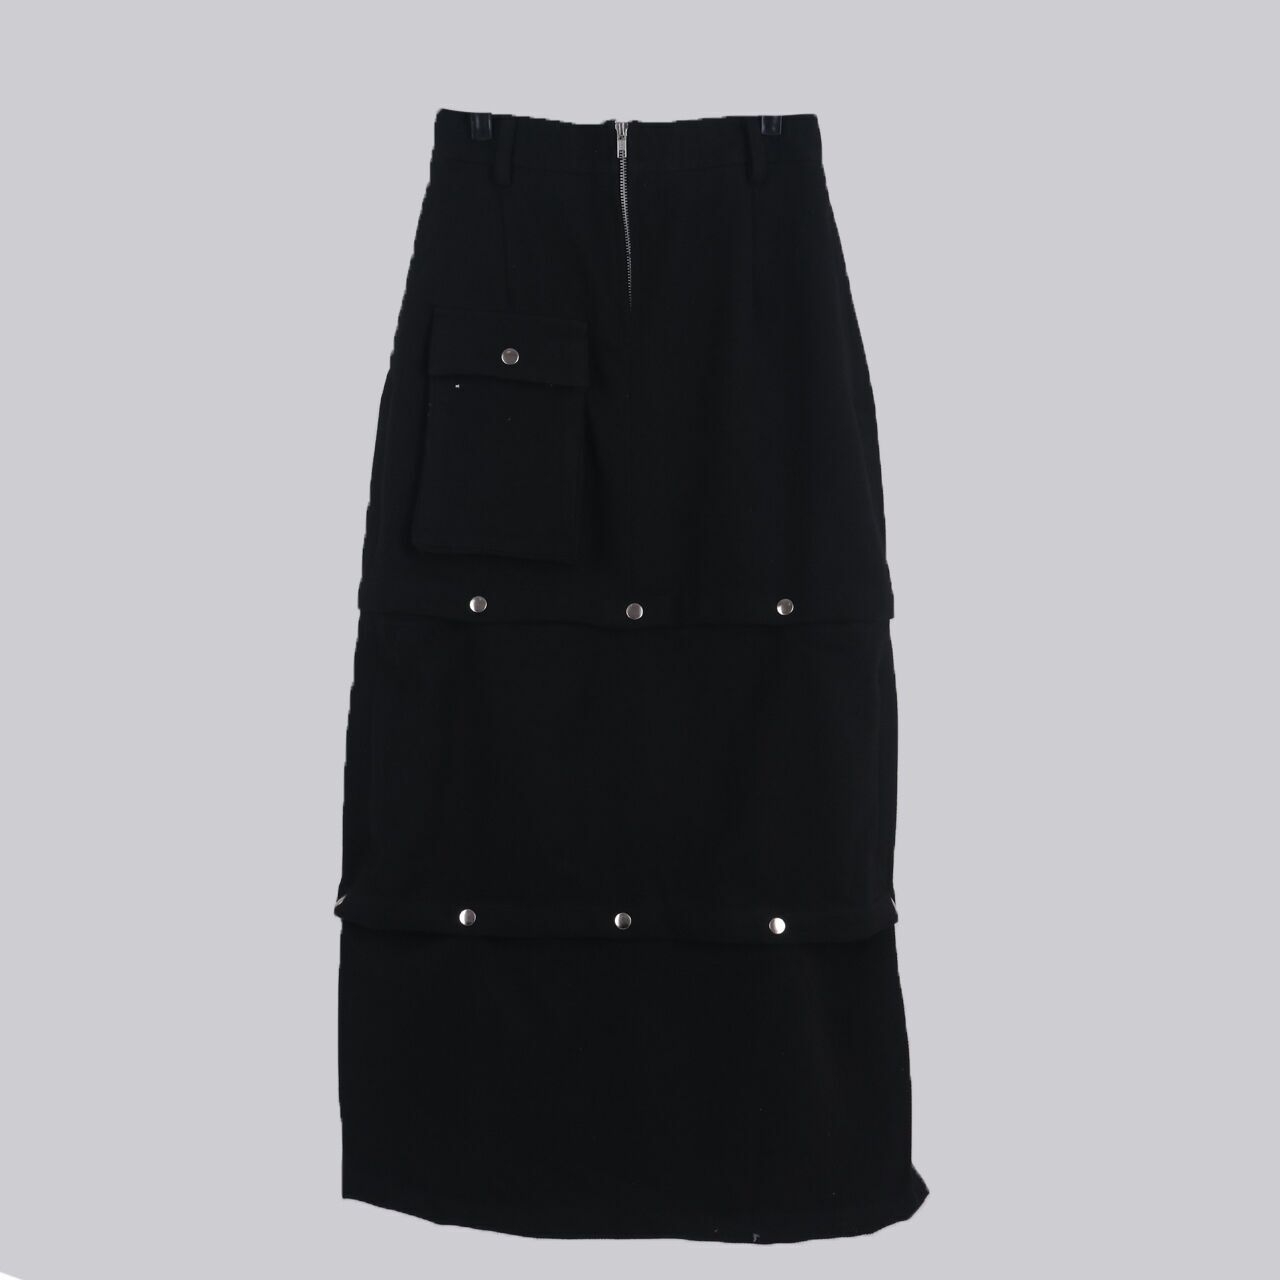 Blanc Studio Black Maxi Skirt